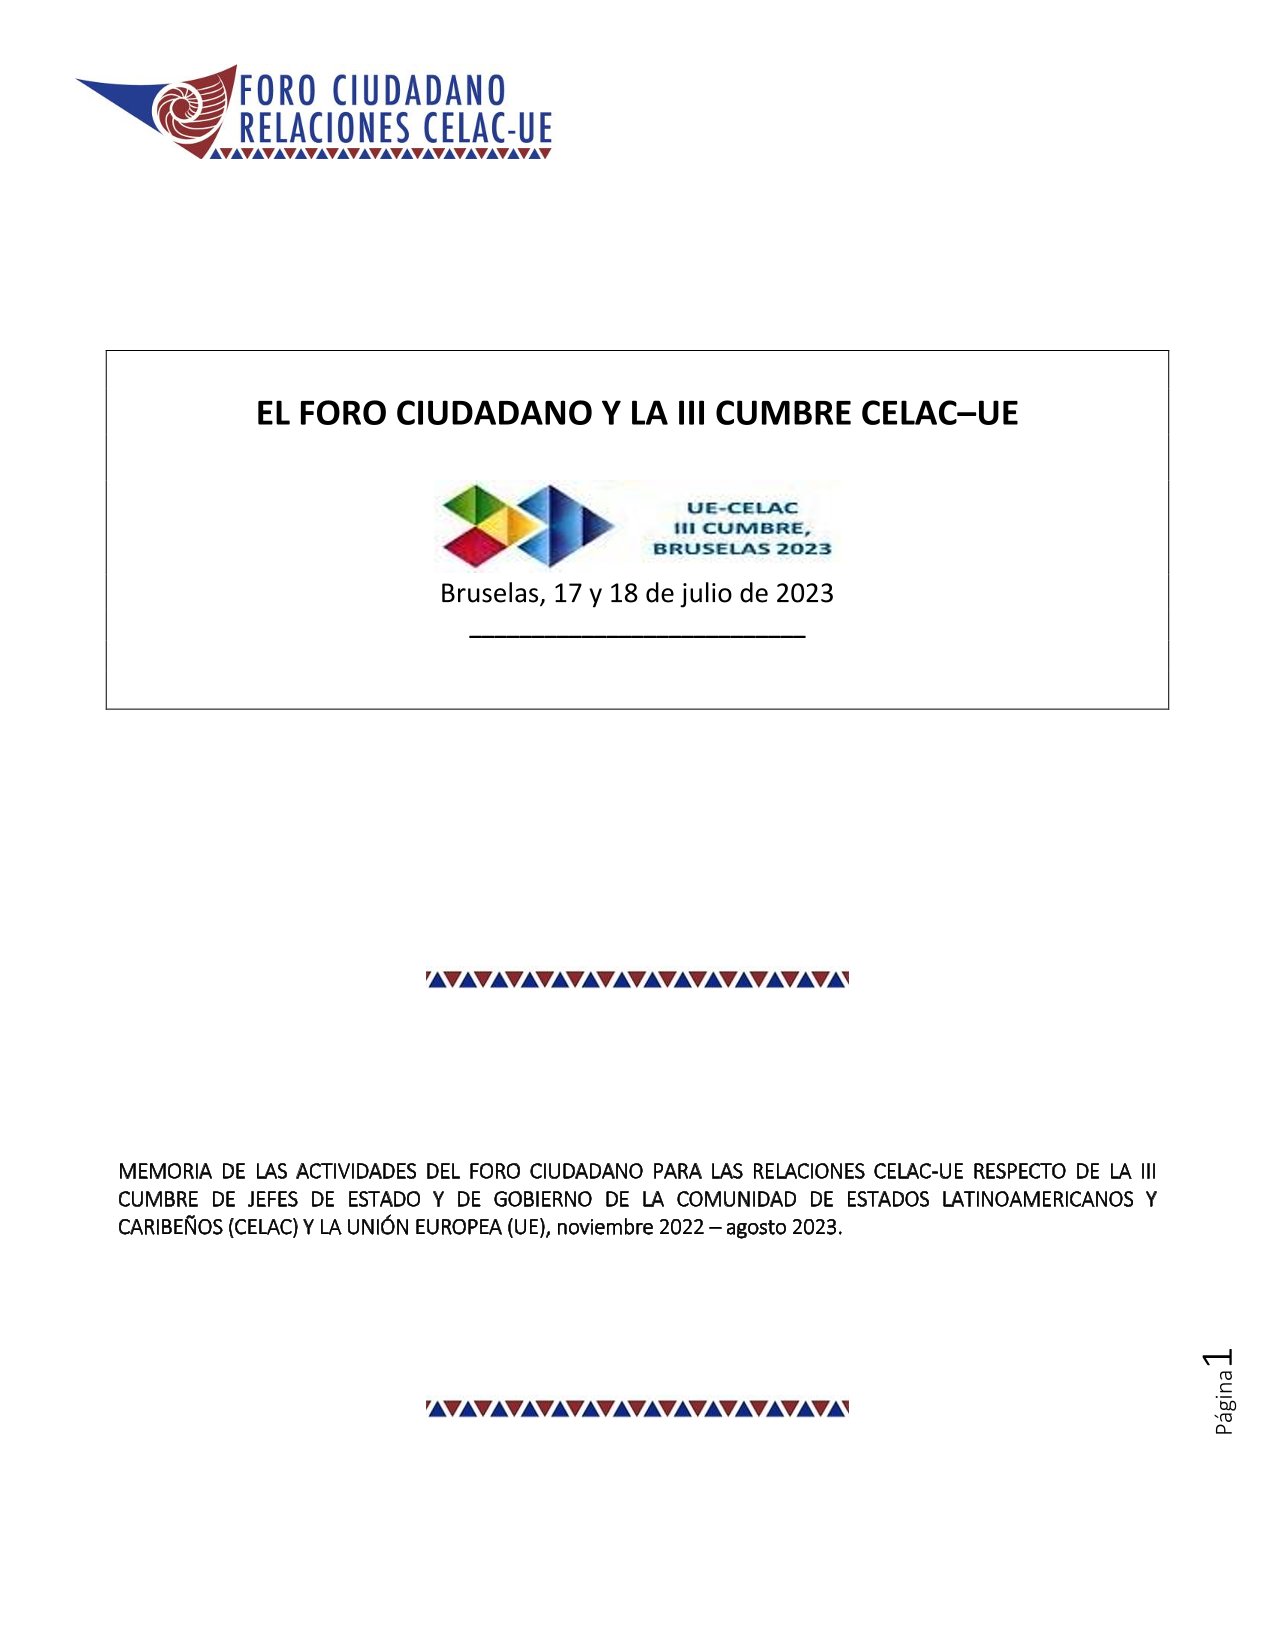 El Foro Ciudadano y la III Cumbre CELAC-UE, Bruselas, 17 y 18 de julio de 2023